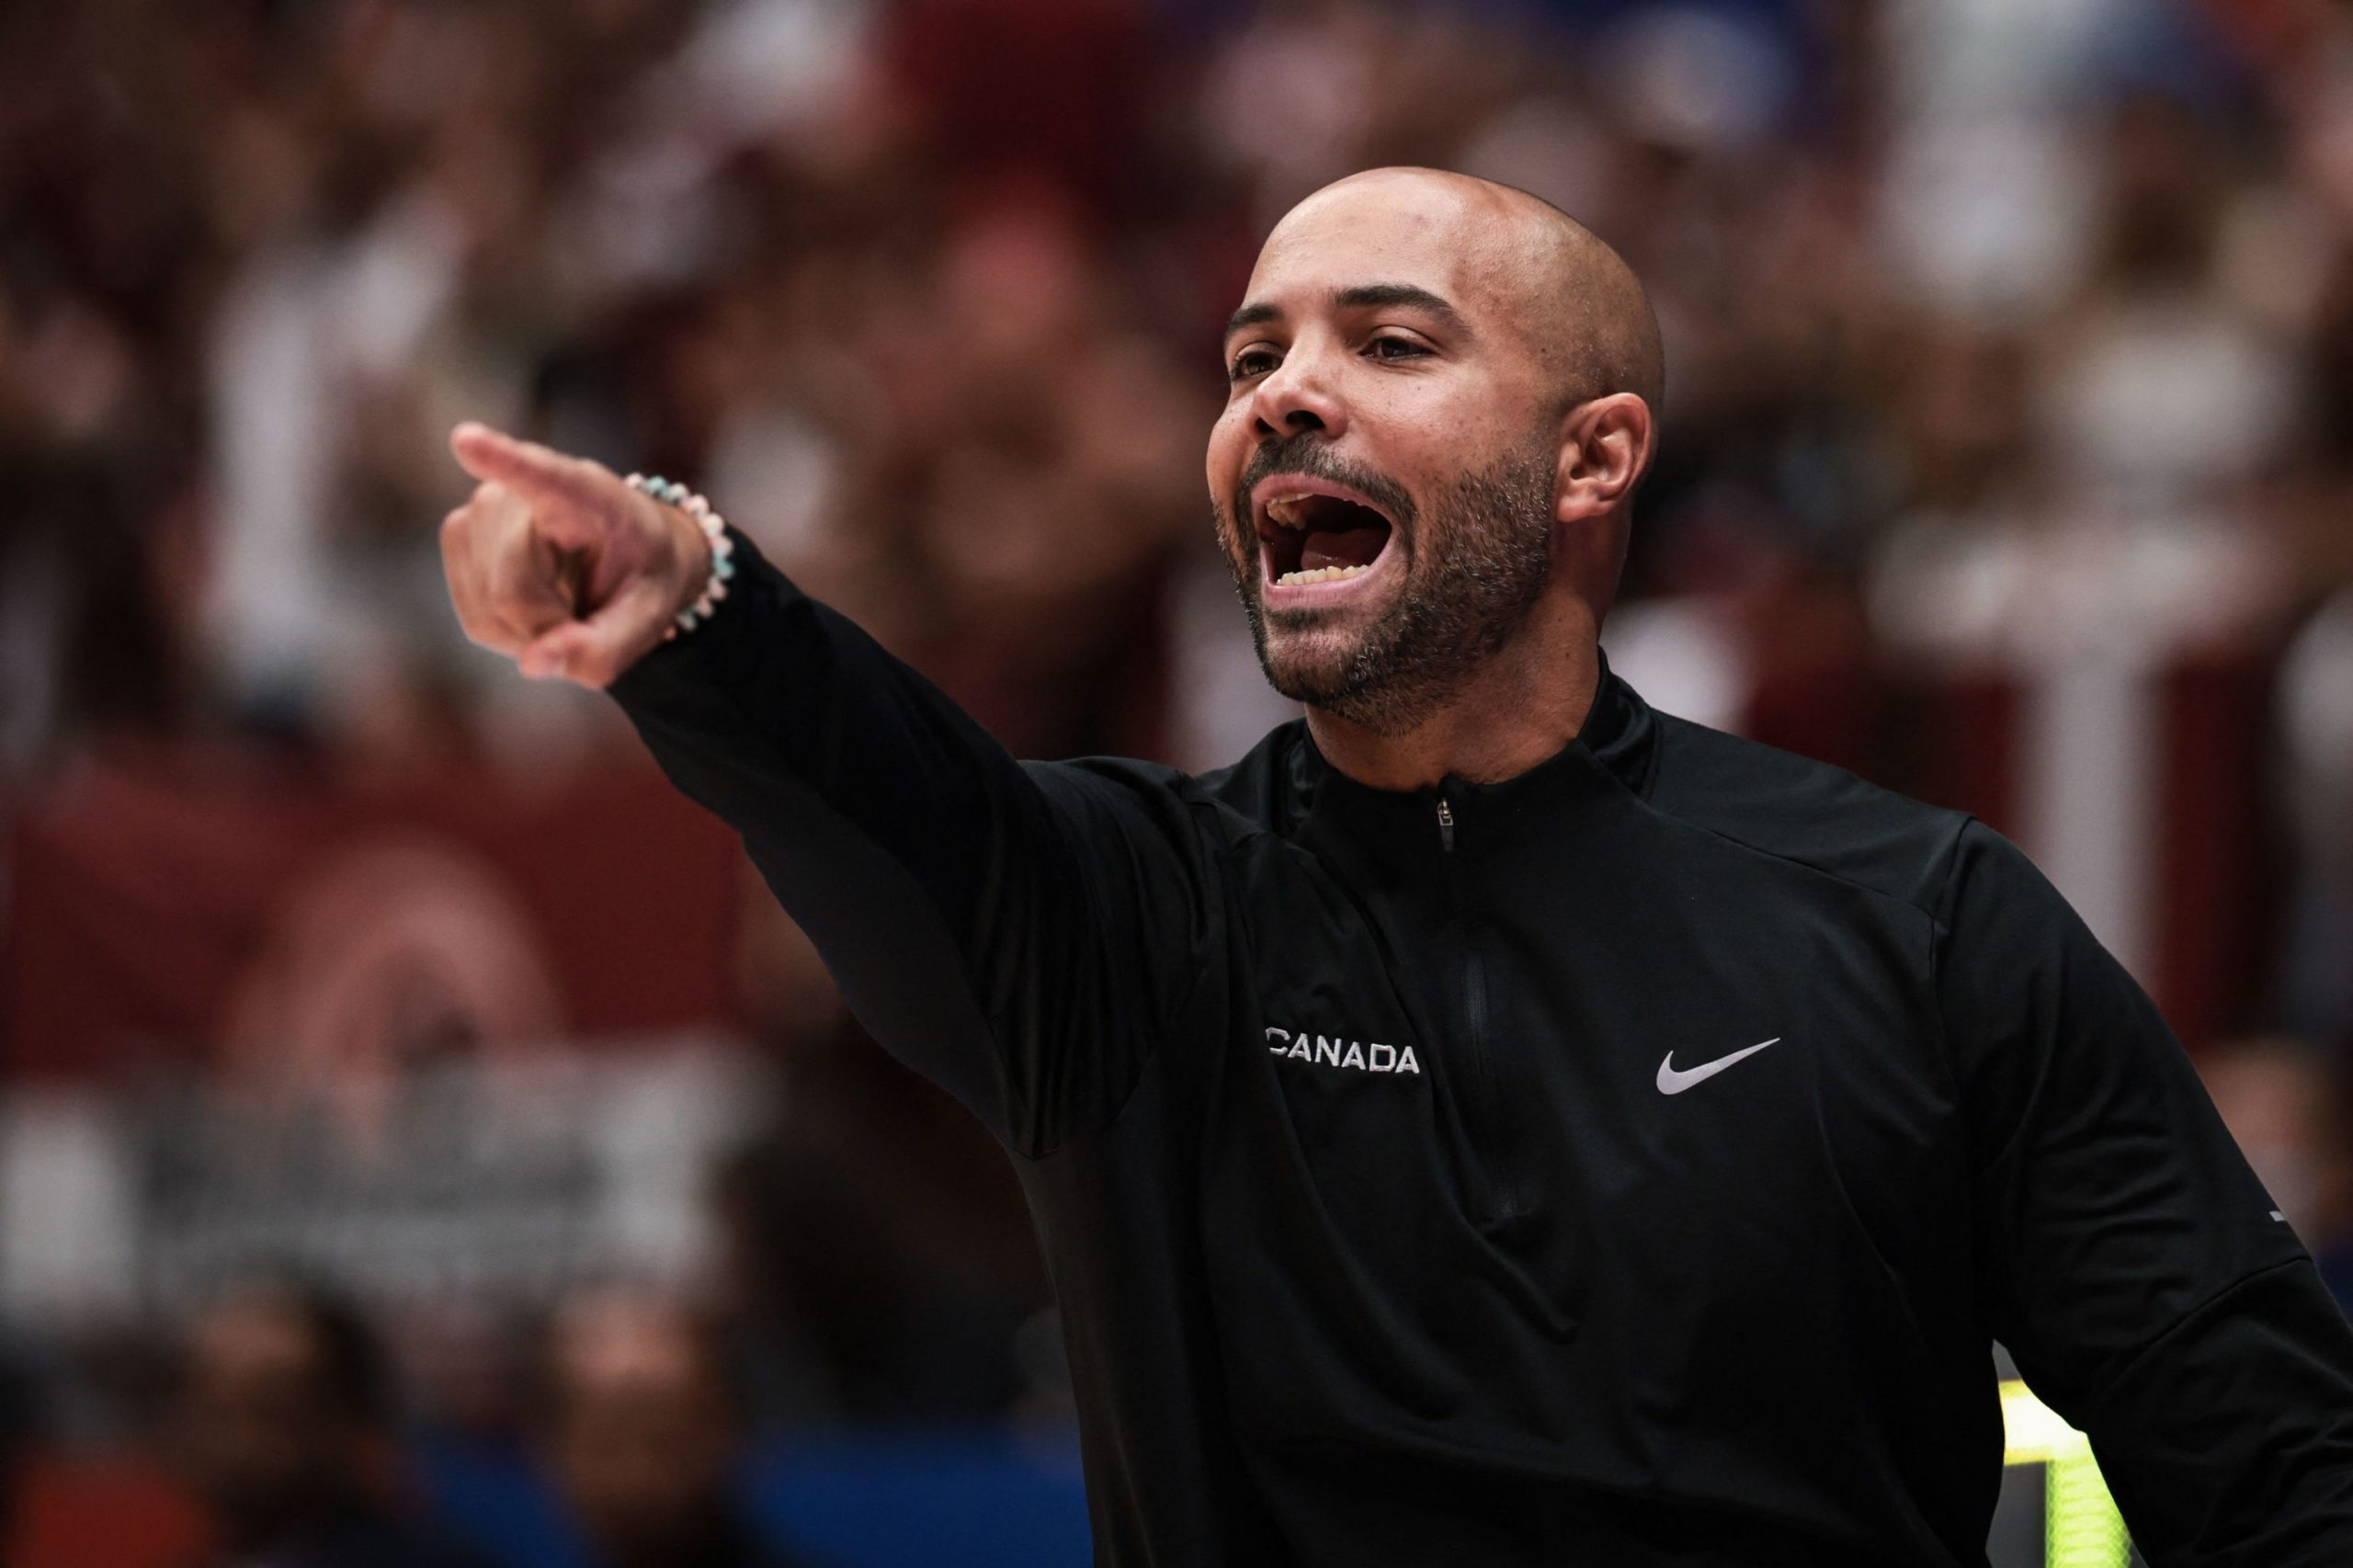 Jordi Fernández, nuevo entrenador de los Nets: "El baloncesto español es muy respetado en la NBA"